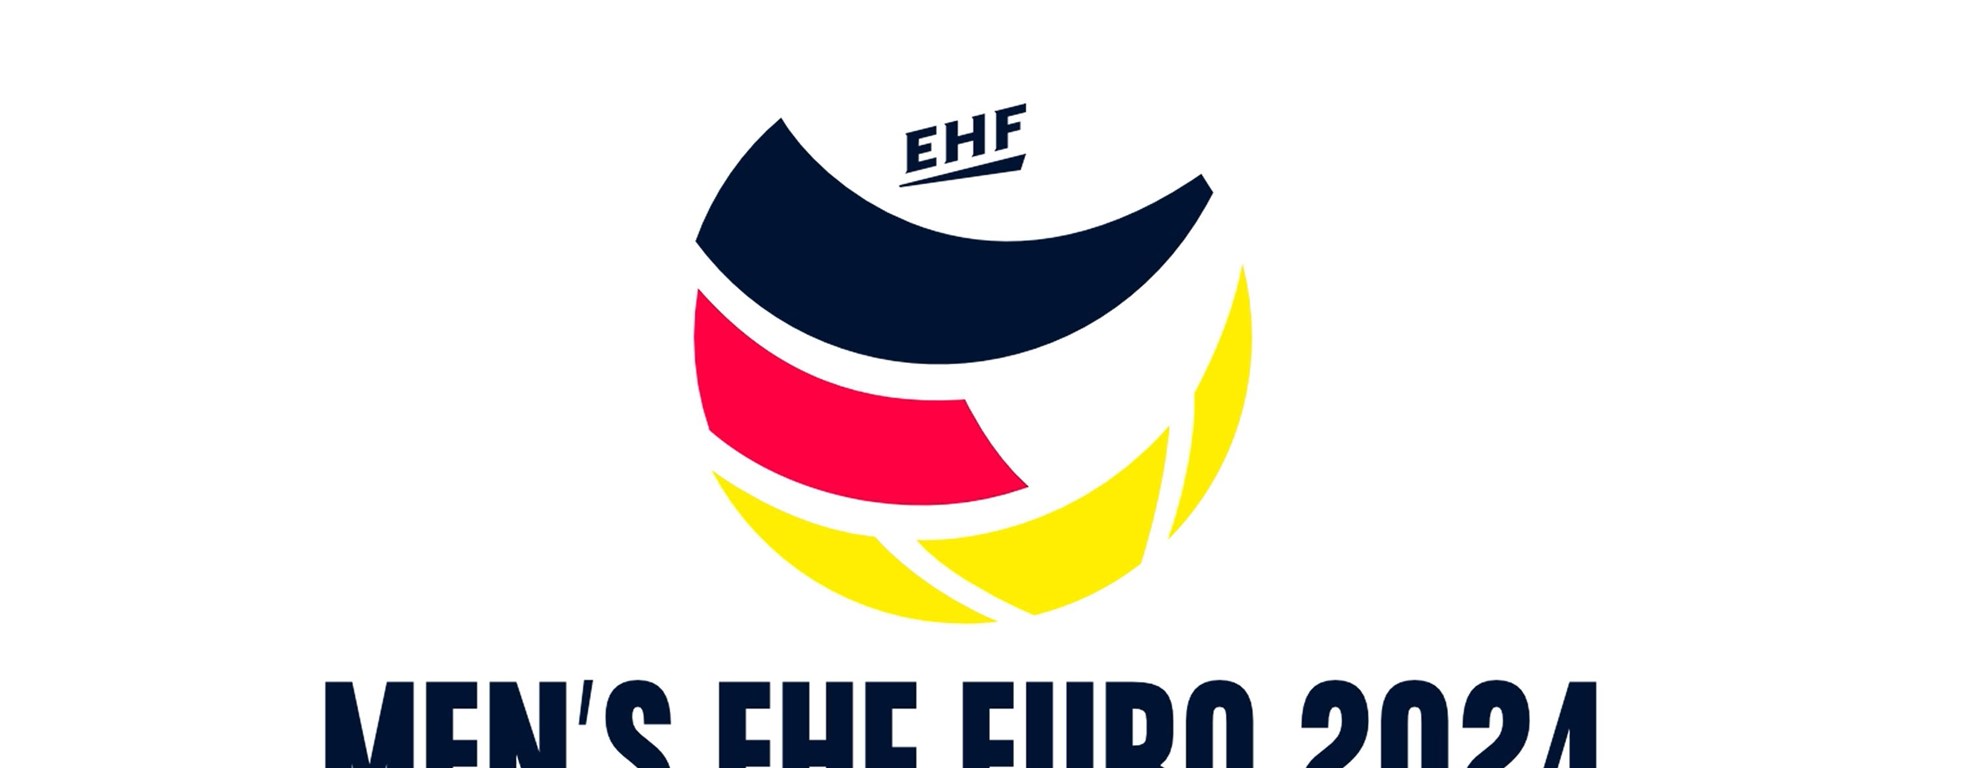 Ehf Euro 2024 Logo Full Size ?center=0.31941314265147241,0.490541528037435&mode=crop&width=1980&height=768&rnd=132859336865400000